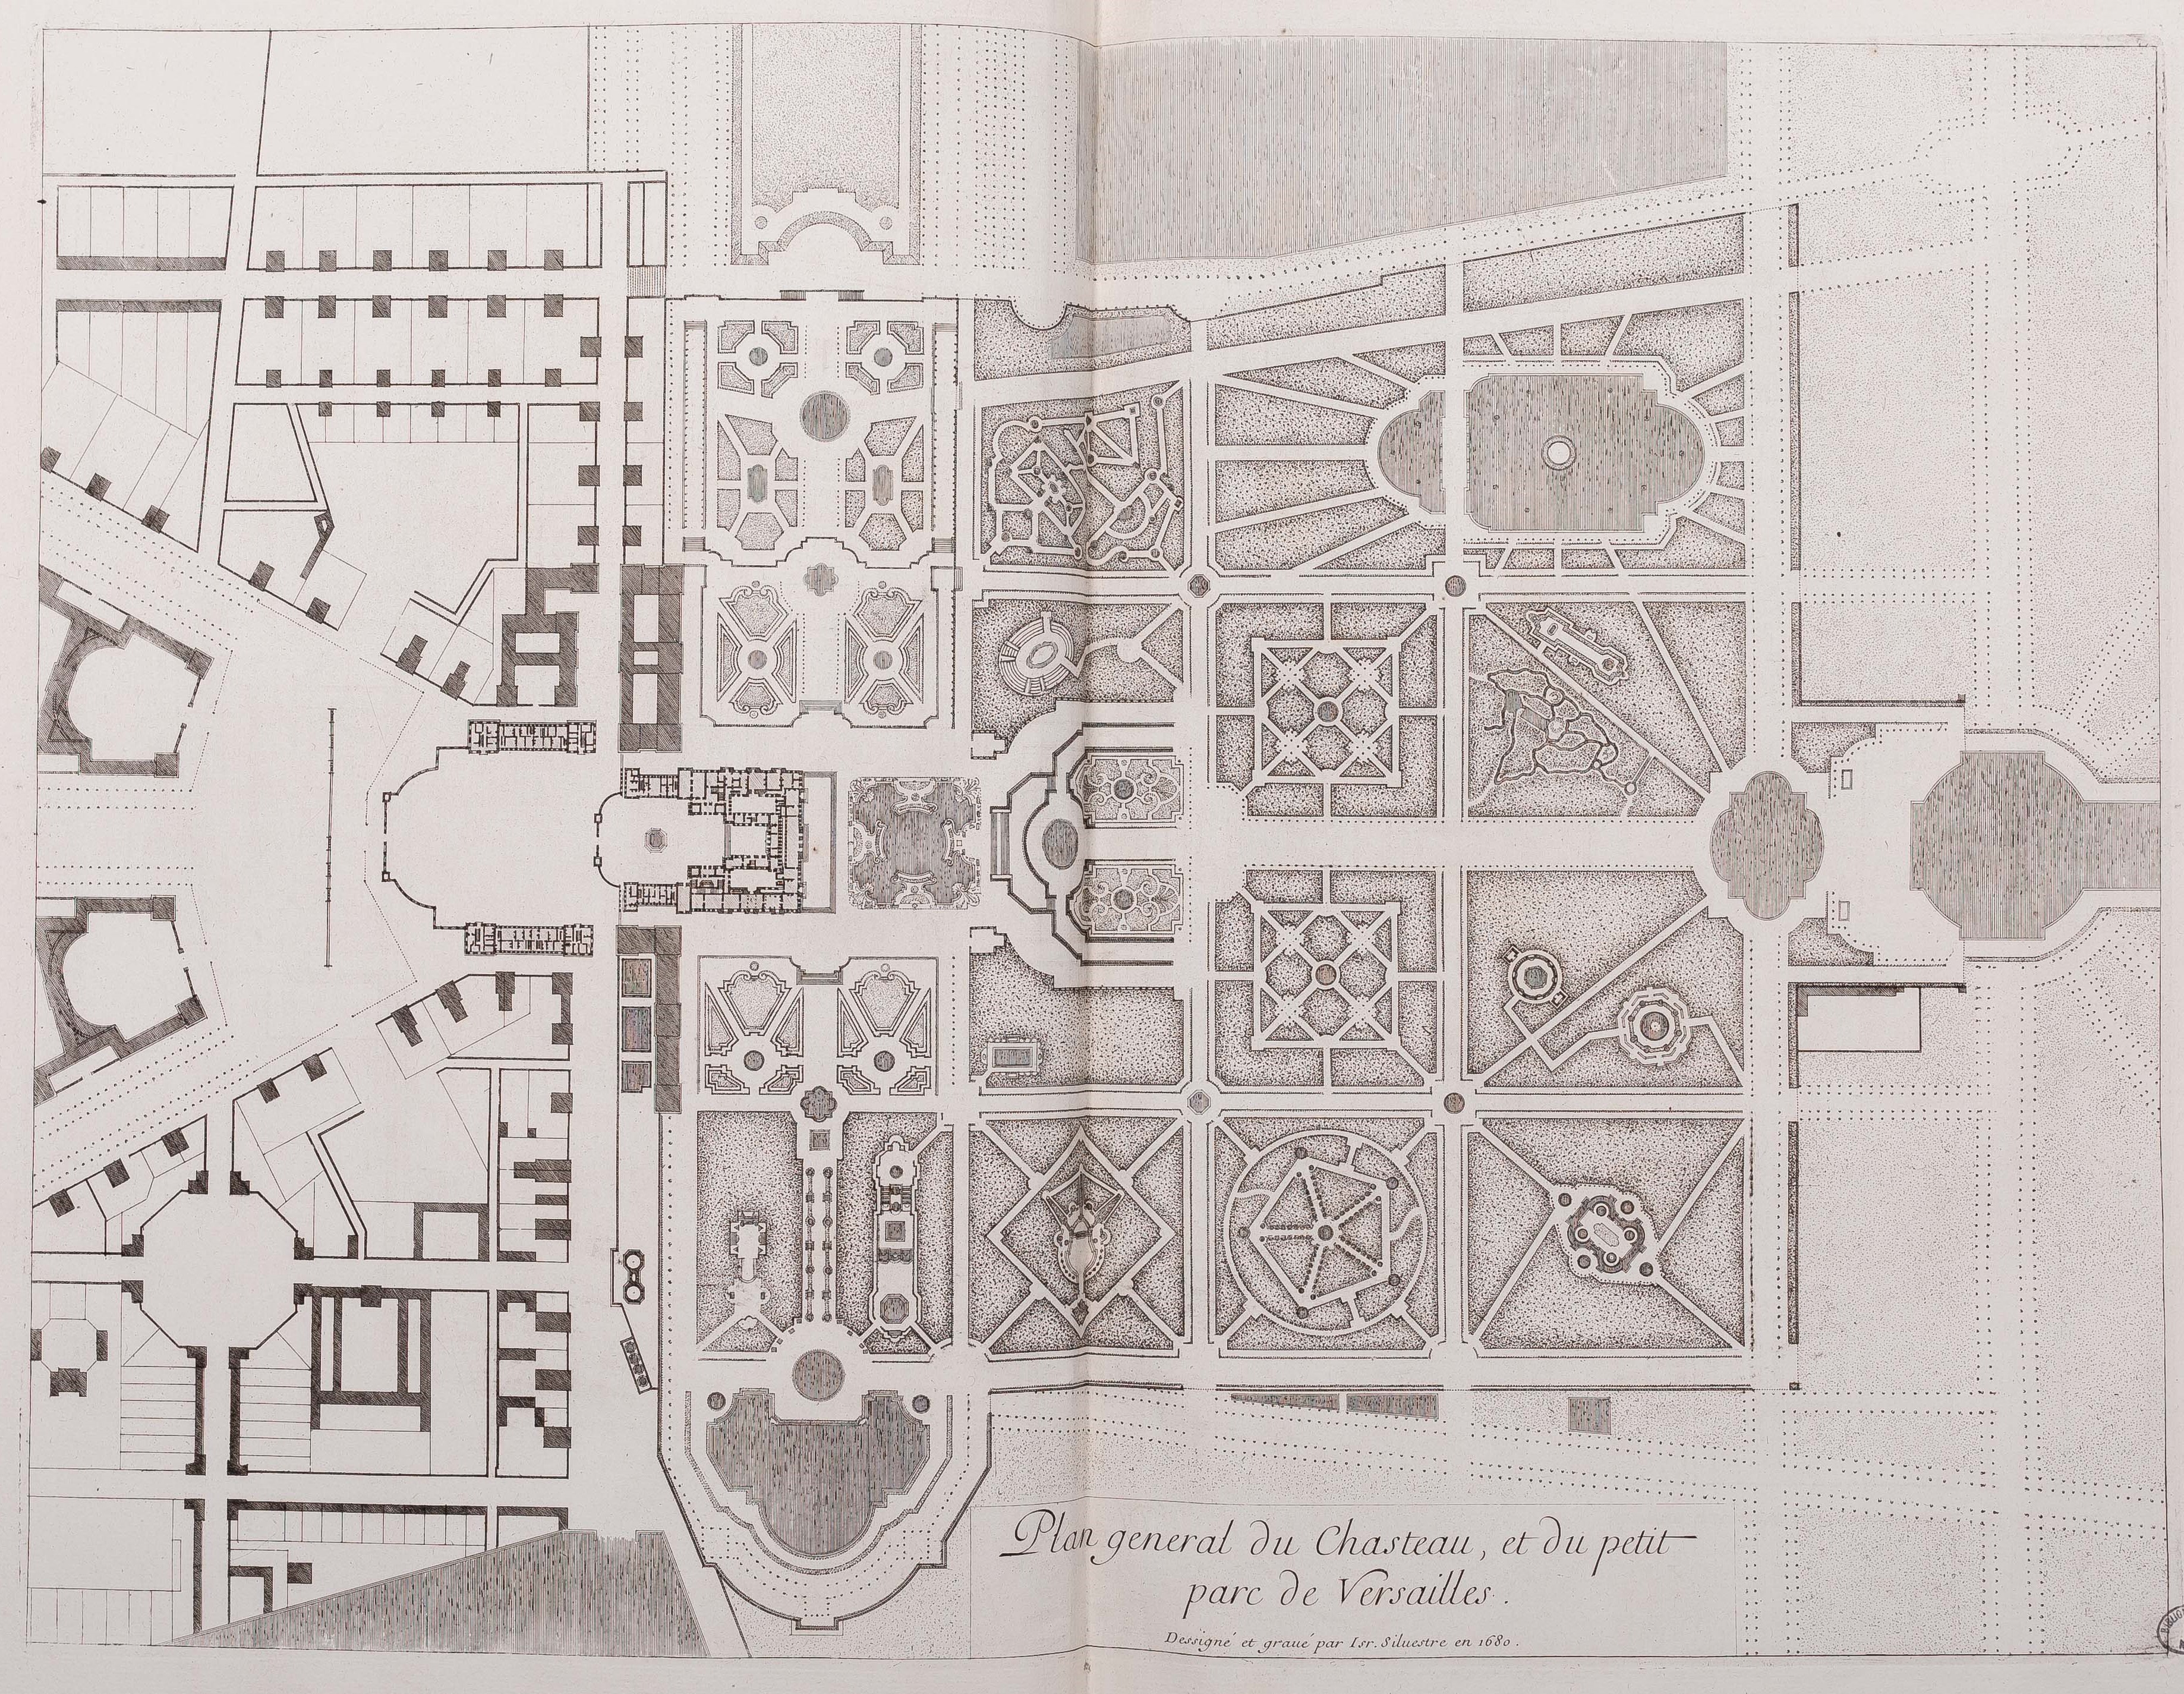 Israël Silvestre : Plan général du Chasteau, et du petit parc de Versailles.